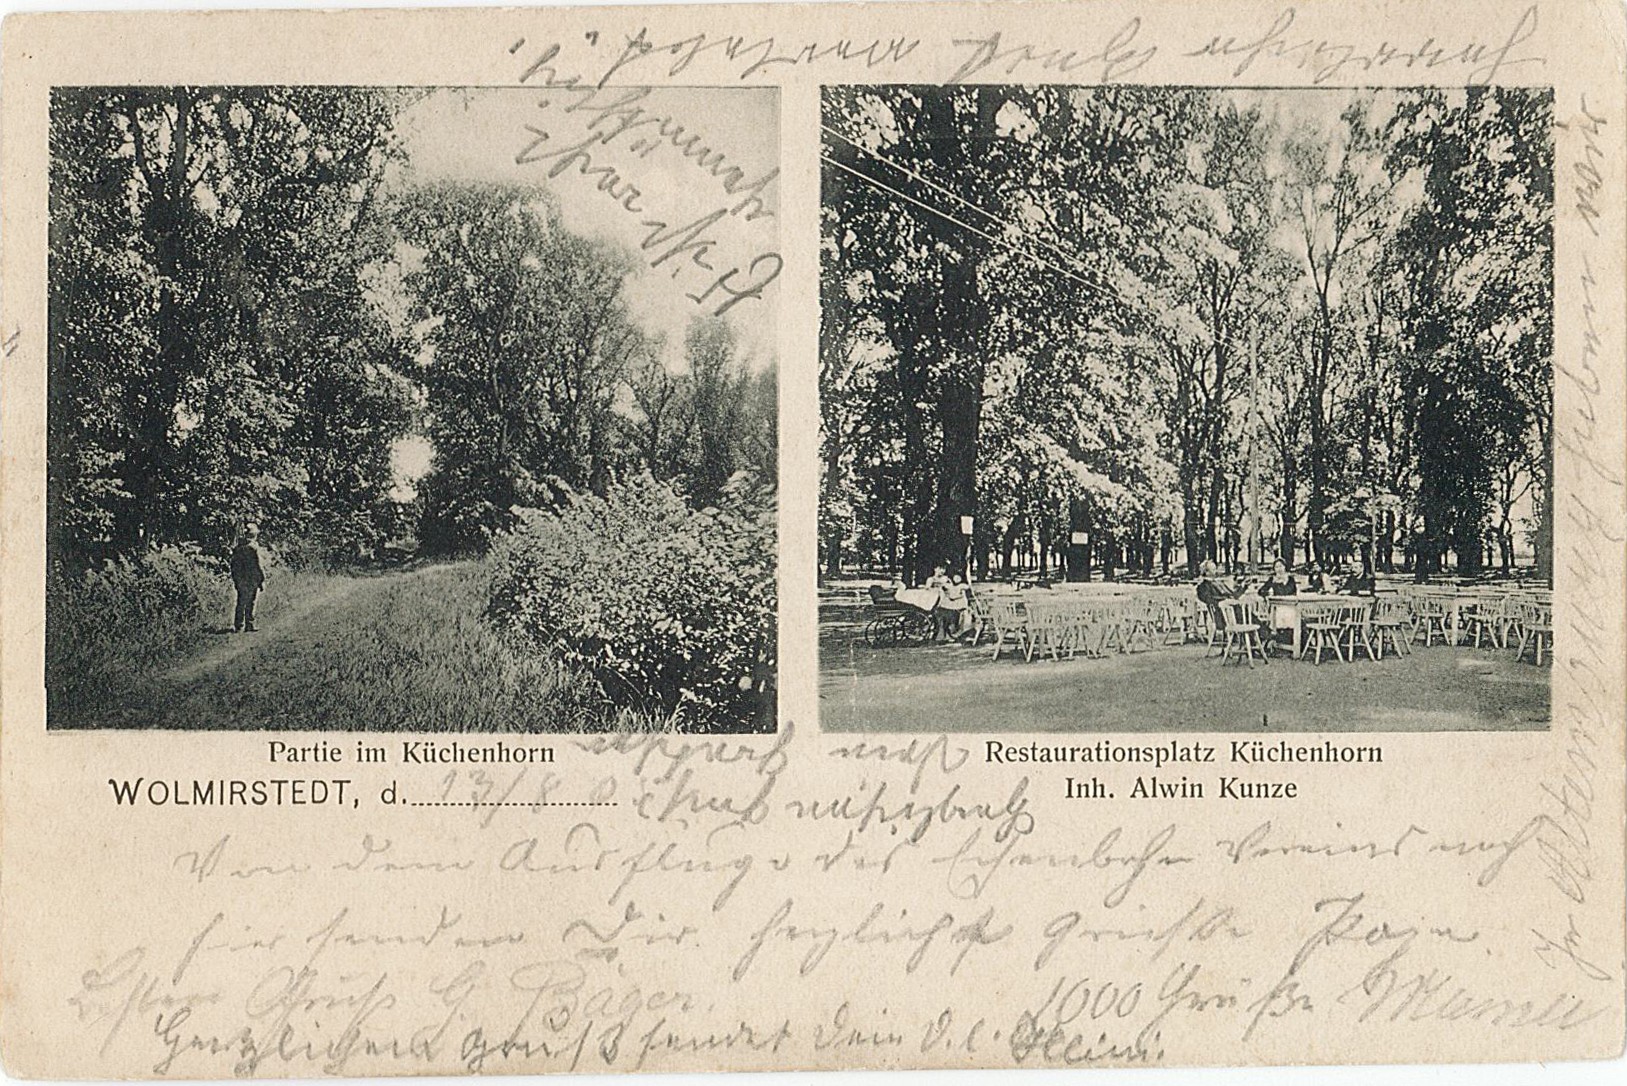 Postkarte "Gruss aus Wolmirstedt. Partie im Küchenhorn / Restaurationsplatz Küchenhorn", August 1905 (Museum Wolmirstedt RR-F)